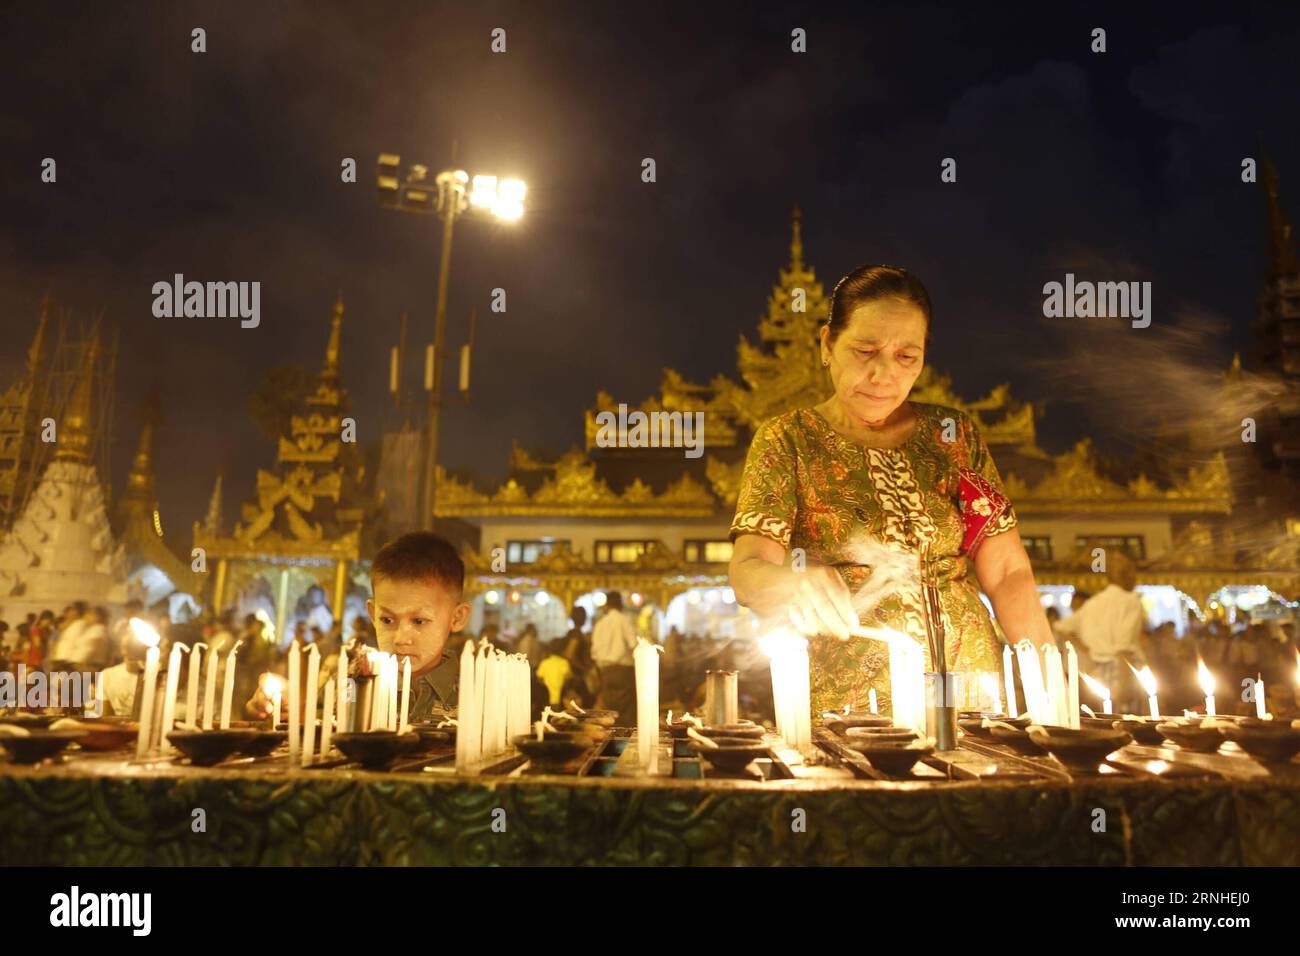 Die Menschen zünden Kerzen auf Myanmars traditionellem Tazaungdaing-Festival in der Shwedagon-Pagode in Yangon, Myanmar, 13. November 2016. Das Tazaungdaing Festival, auch bekannt als das Festival der Lichter, das im achten Monat des traditionellen myanmarischen Kalenders auf den Vollmondtag fällt, wird als Nationalfeiertag in Myanmar gefeiert und markiert das Ende der Regenzeit. ) (zw) MYANMAR-YANGON-TAZAUNGDAING FESTIVAL UxAung PUBLICATIONxNOTxINxCHN Celebrities Lichte Kerzen AUF Myanmar S Traditional Tazaungdaing Festival in der Shwedagon Pagoda in Yangon Myanmar 13. November 2016 das Tazaungdaing Festival T Stockfoto